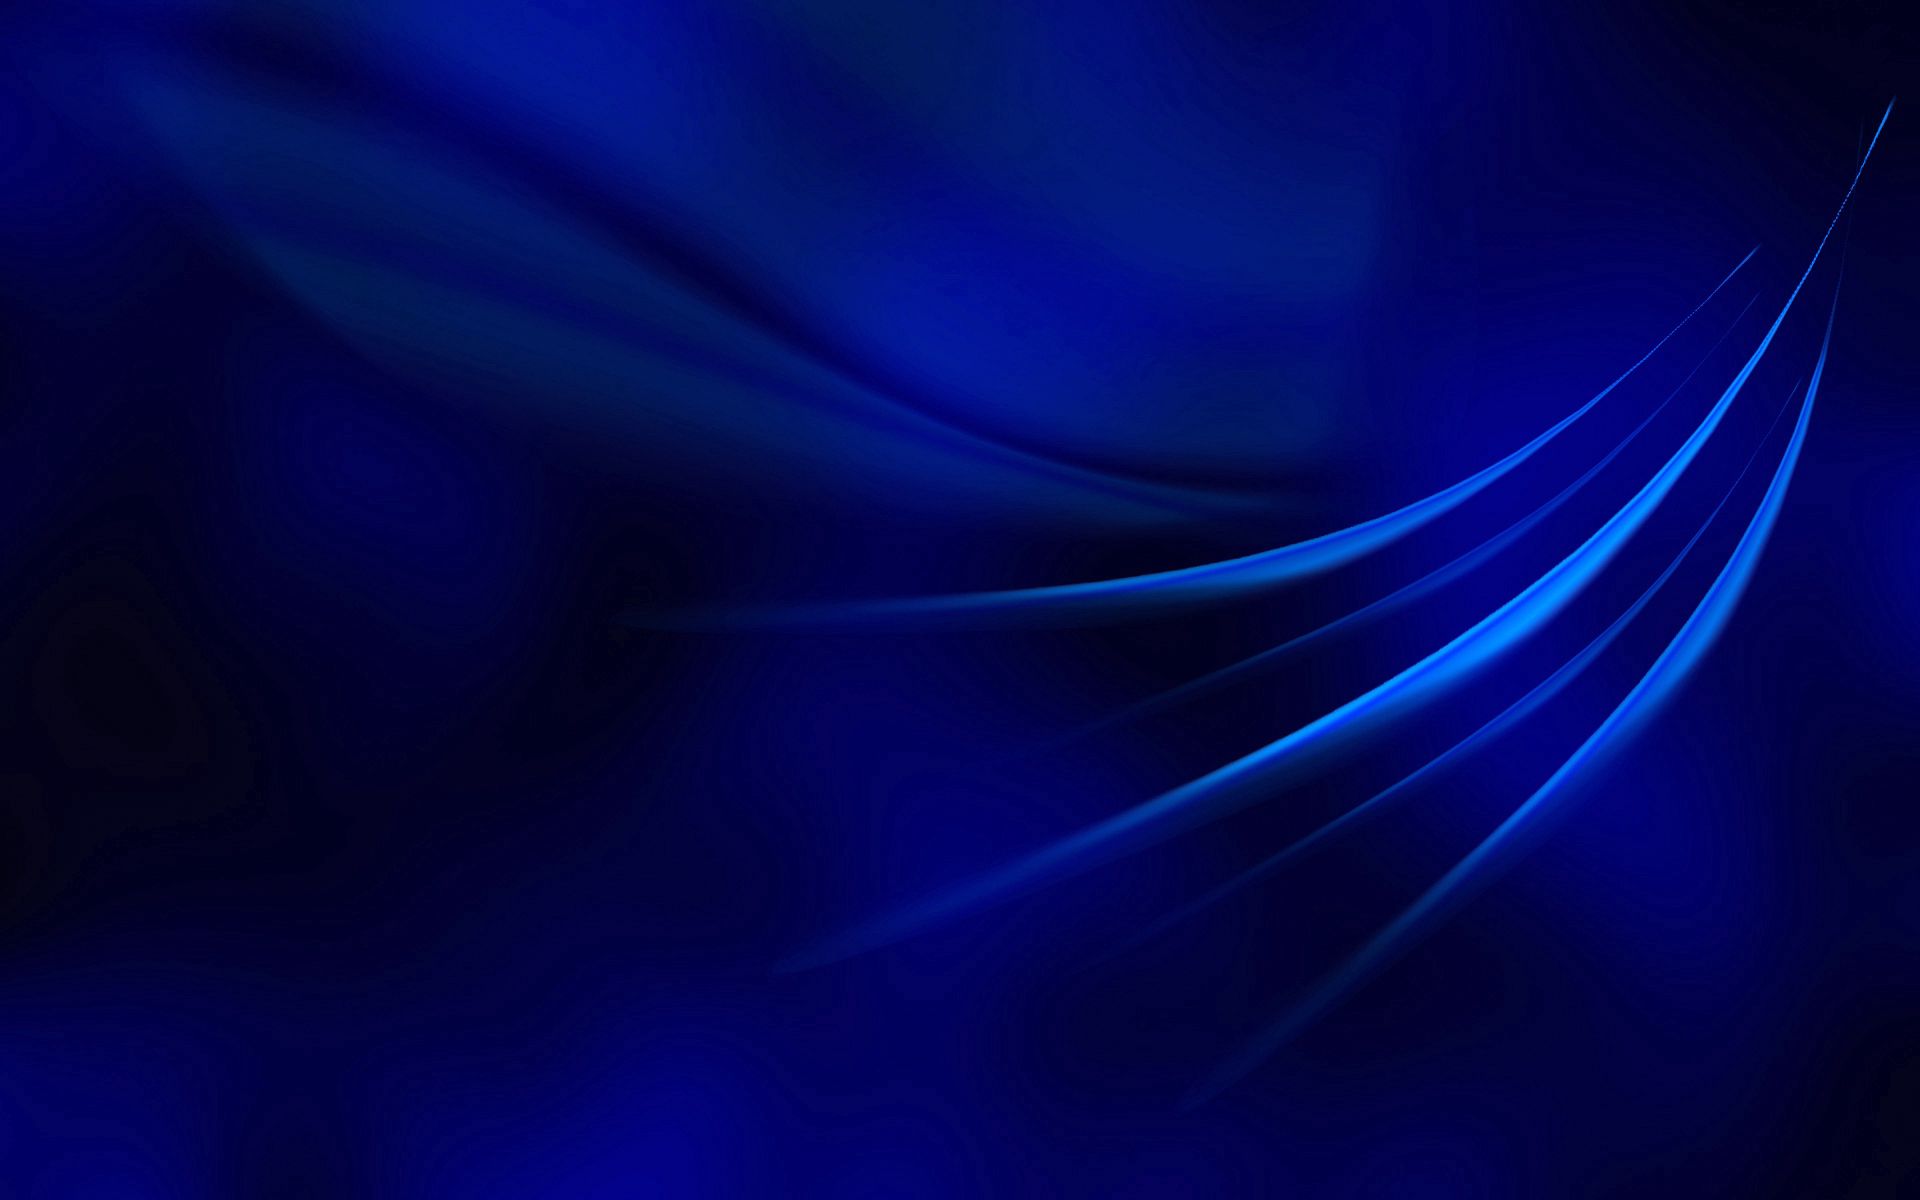 Hình nền xanh dương với đường nét sẽ mang lại cho bạn cảm giác thanh bình và sự tập trung khi sử dụng máy tính. Sự kết hợp giữa màu xanh dương thươn thiện và đường nét tinh tế sẽ làm bạn yên tâm và tập trung hơn trong công việc.